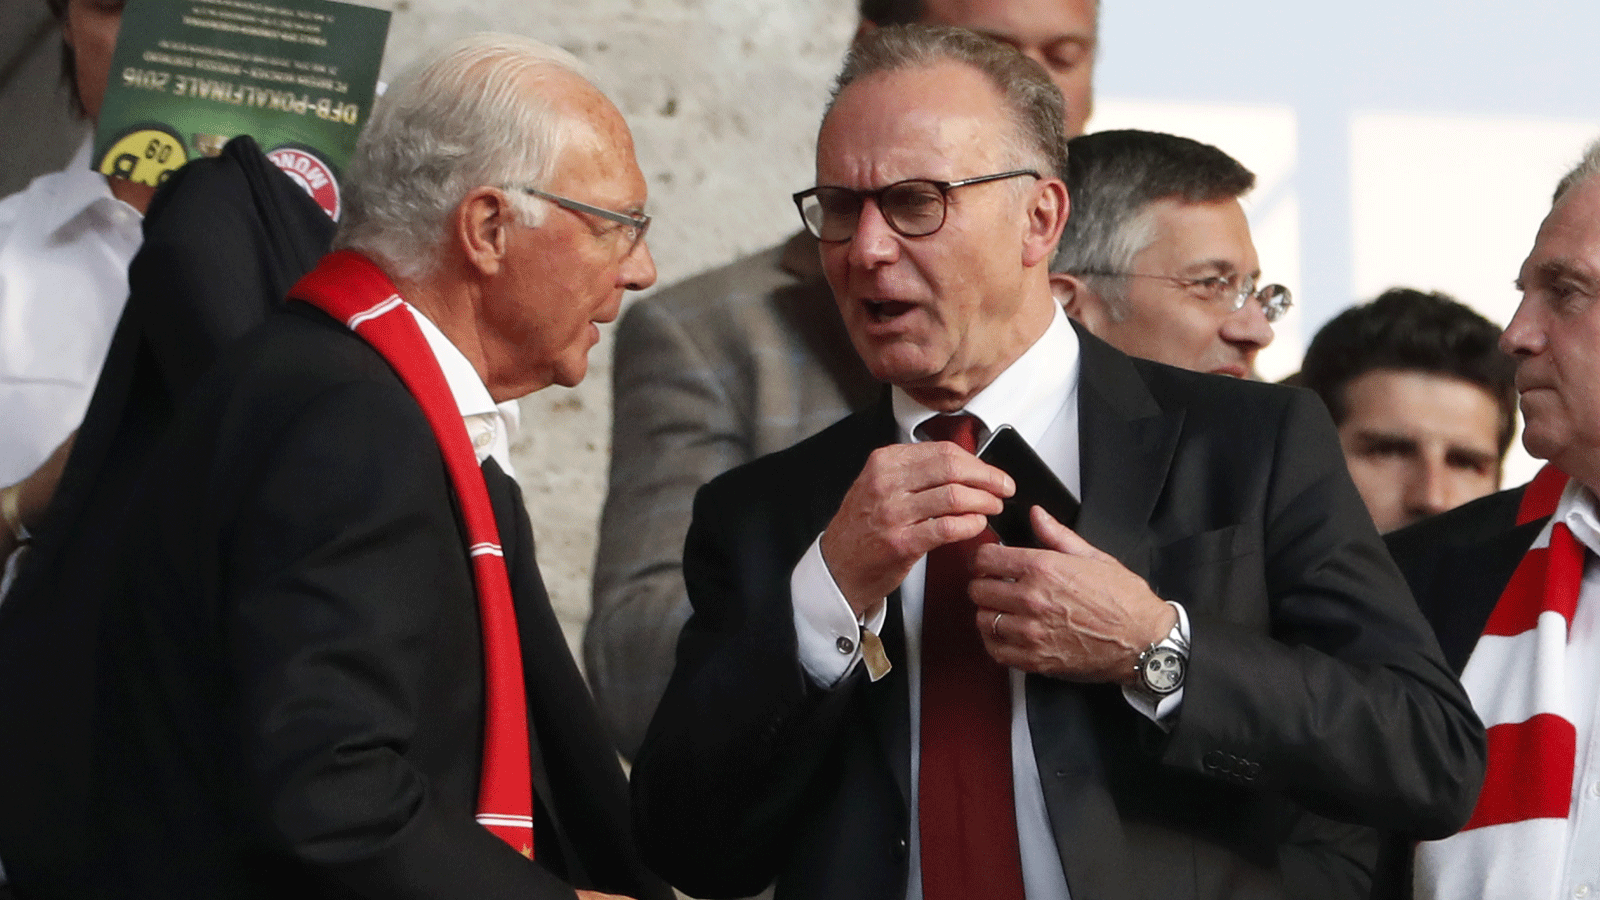 Karl-Heinz Rummenigge, Franz Beckenbauer